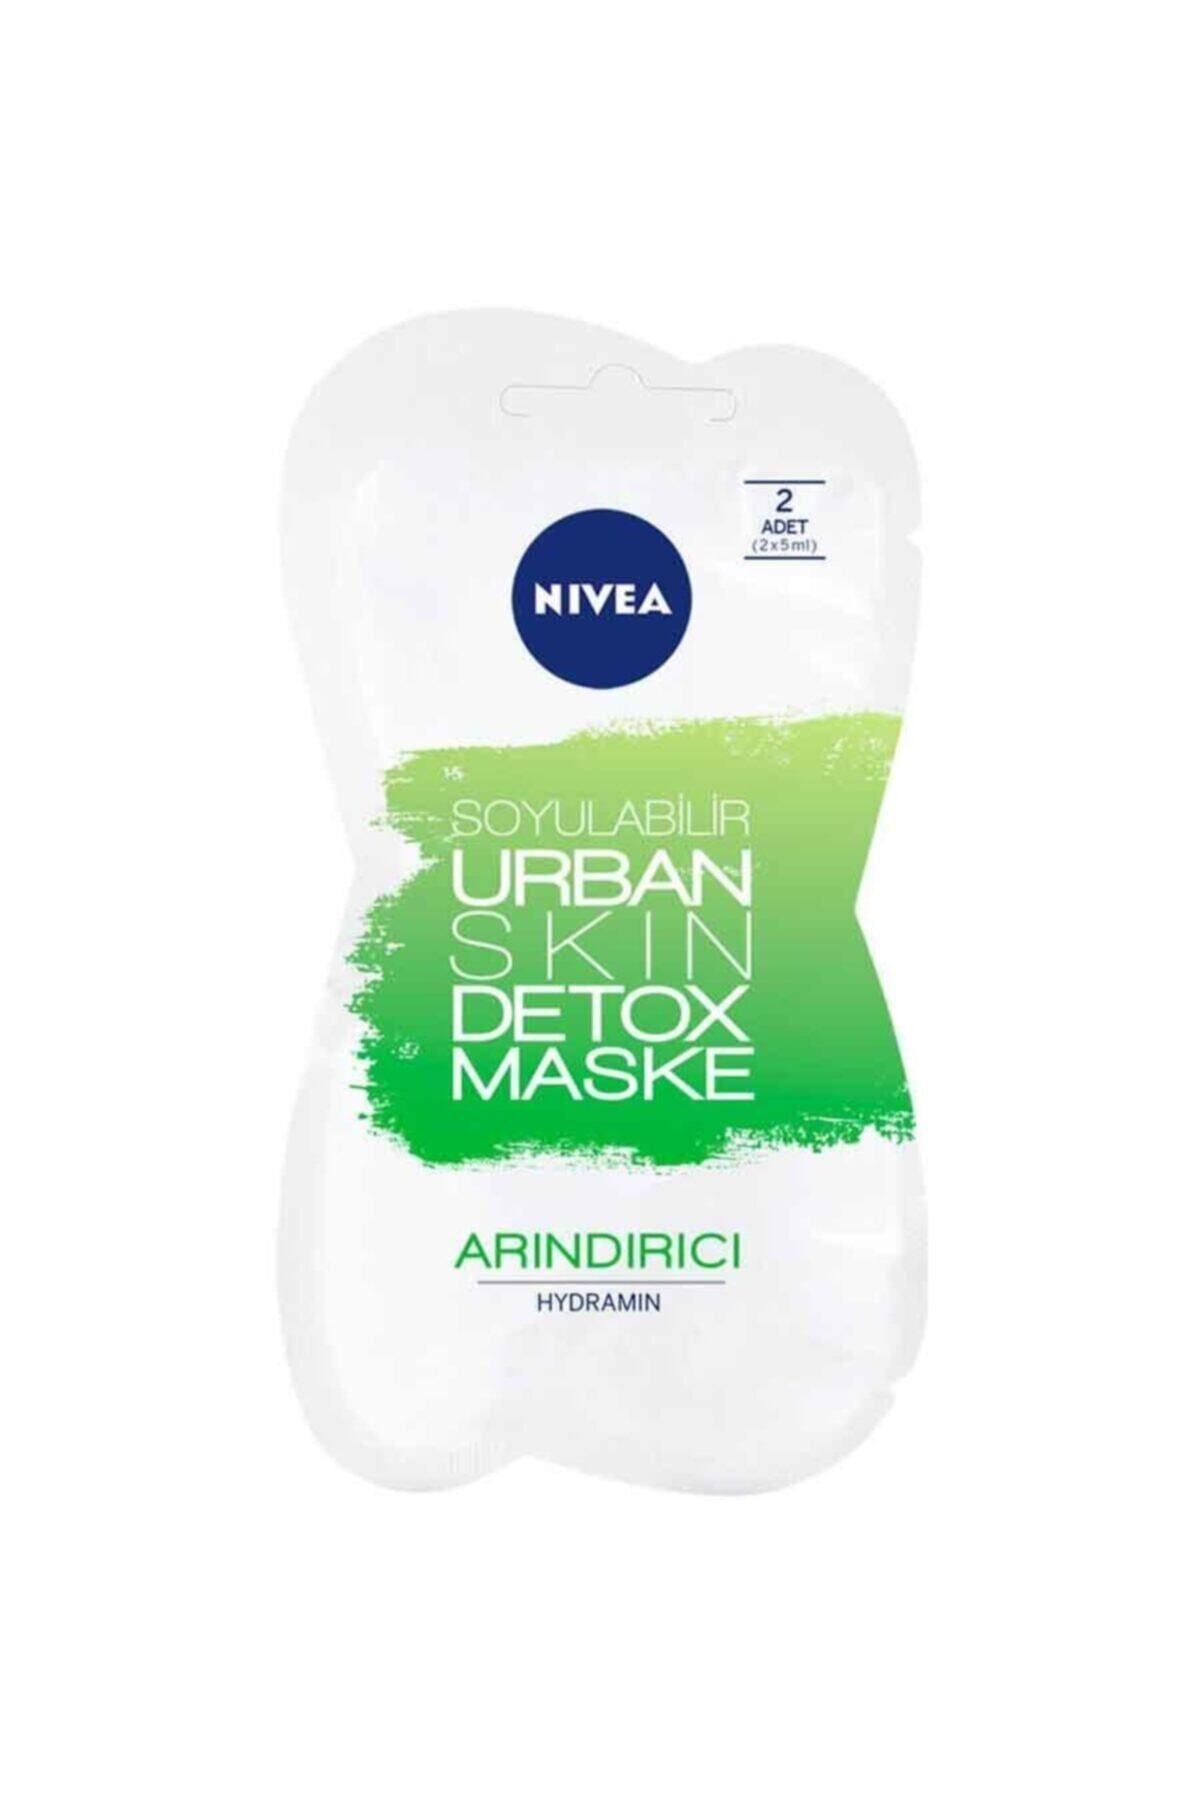 NIVEA Urban Skin Detox Maske - Soyulabilir Arındırıcı Maske 2 Adet (2x5 ml)